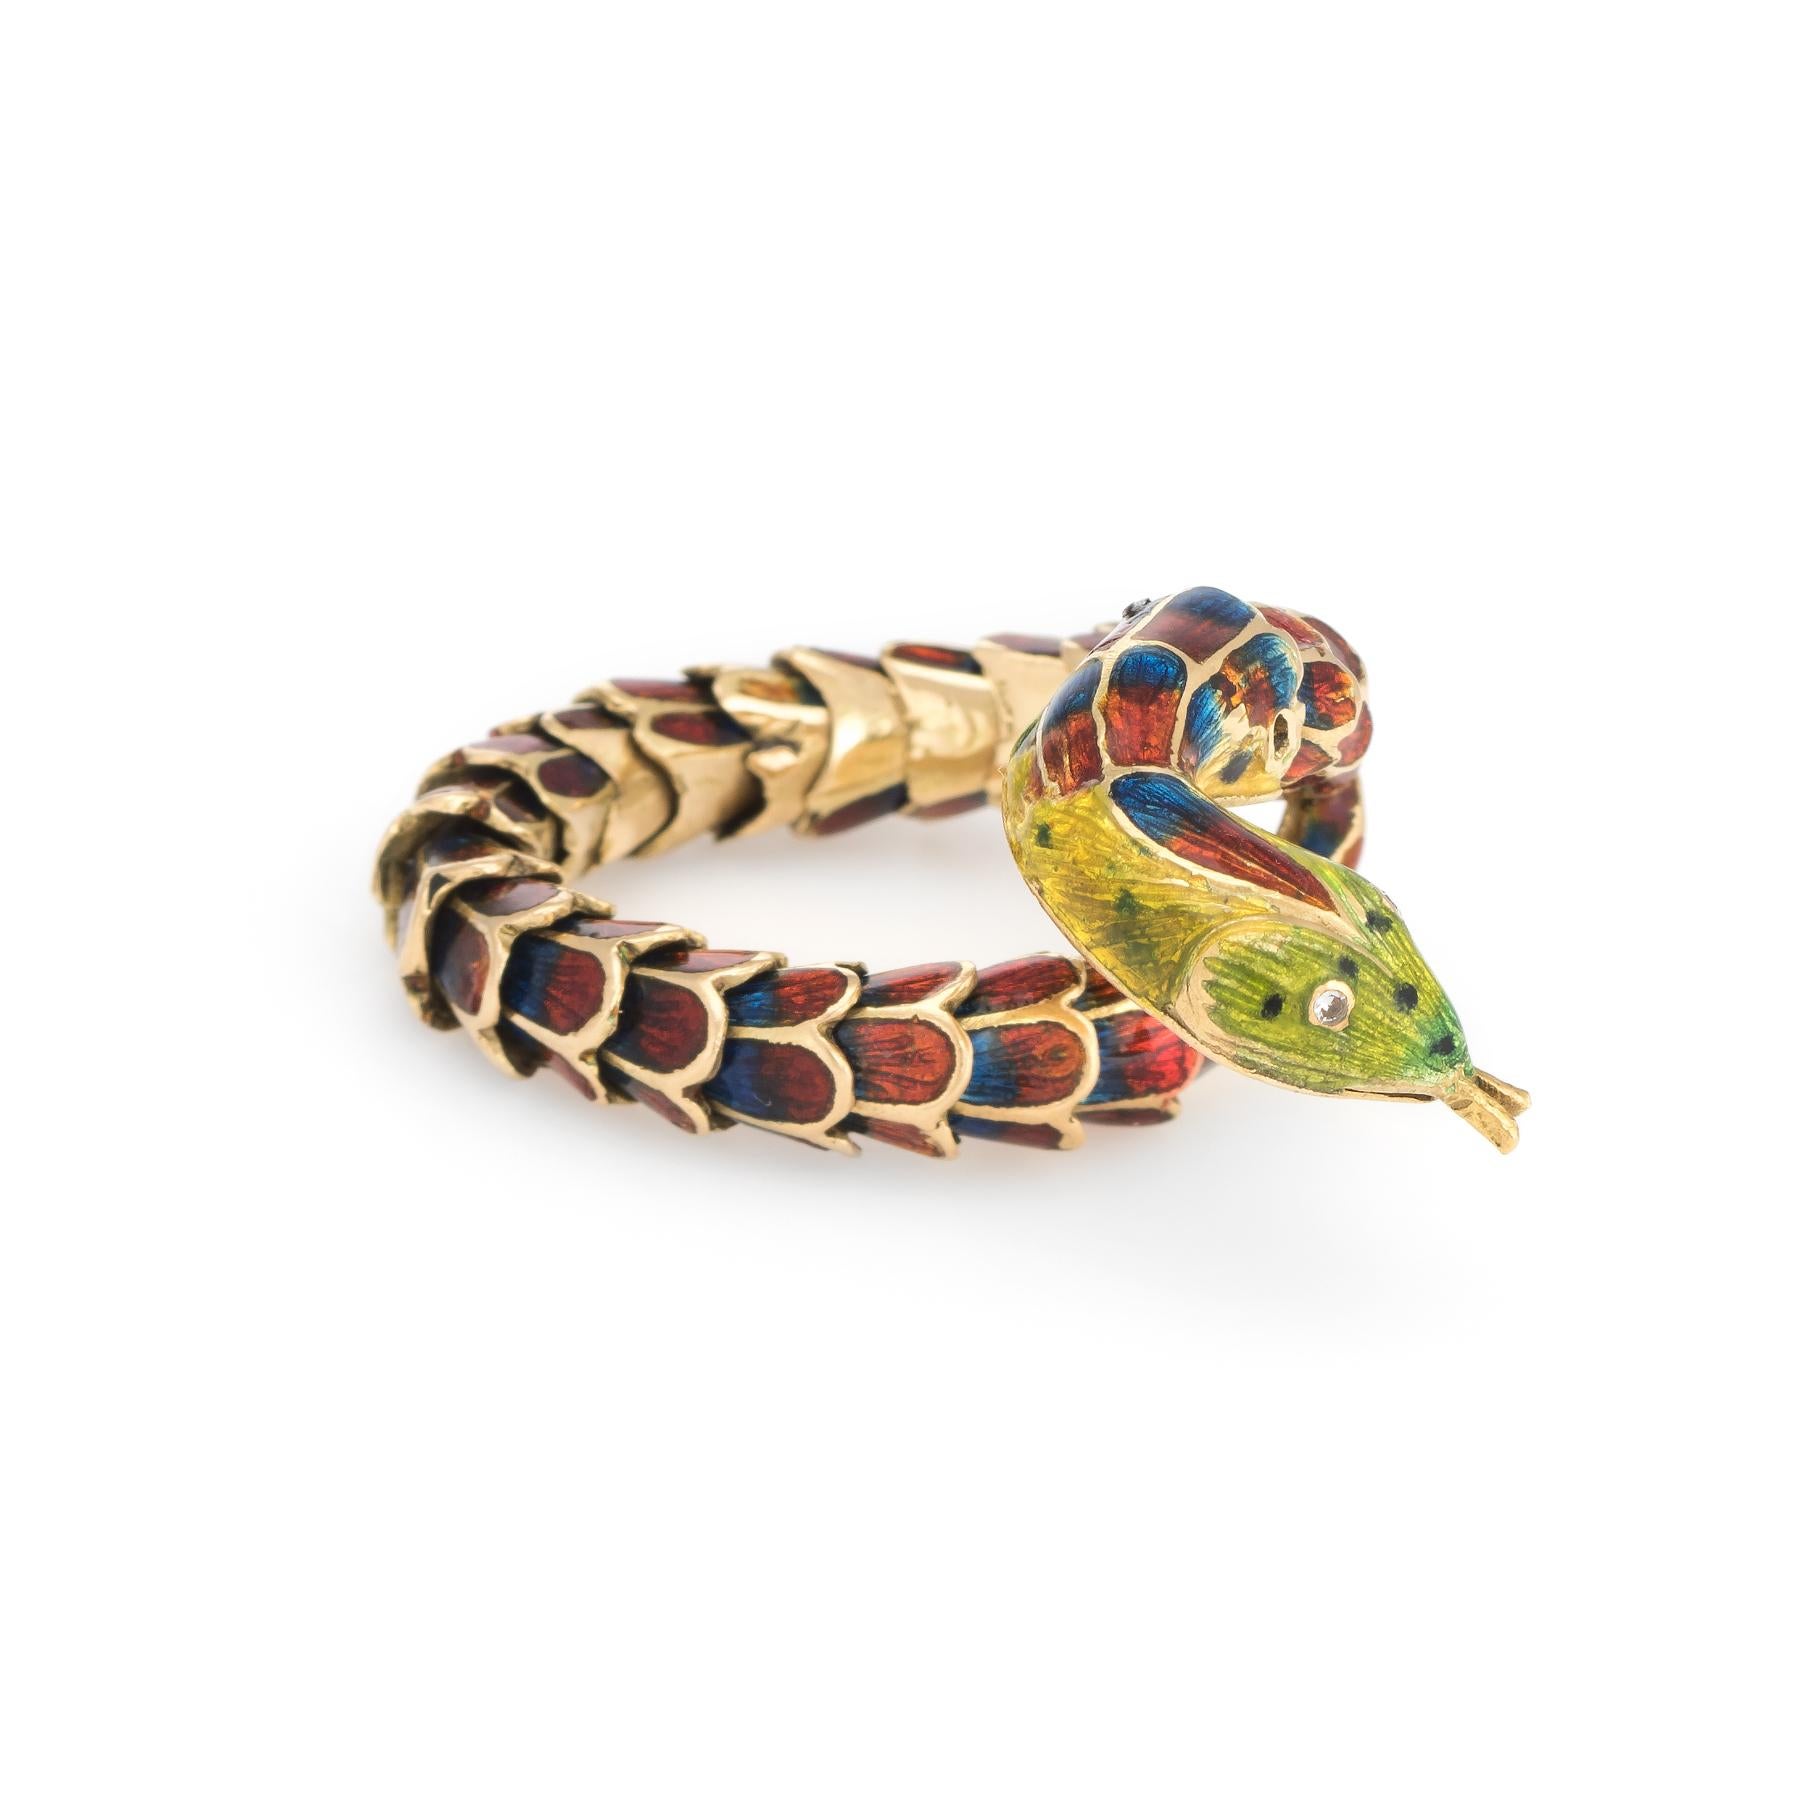 Ausgefallener und stilvoller Vintage-Schlangenring (ca. 1960er bis 1970er Jahre), gefertigt aus 18 Karat Gelbgold. 

Die Schlange weist naturgetreue Details mit verbundenen Schuppen auf, die sich bewegen und die Flexibilität des Bandes ermöglichen.